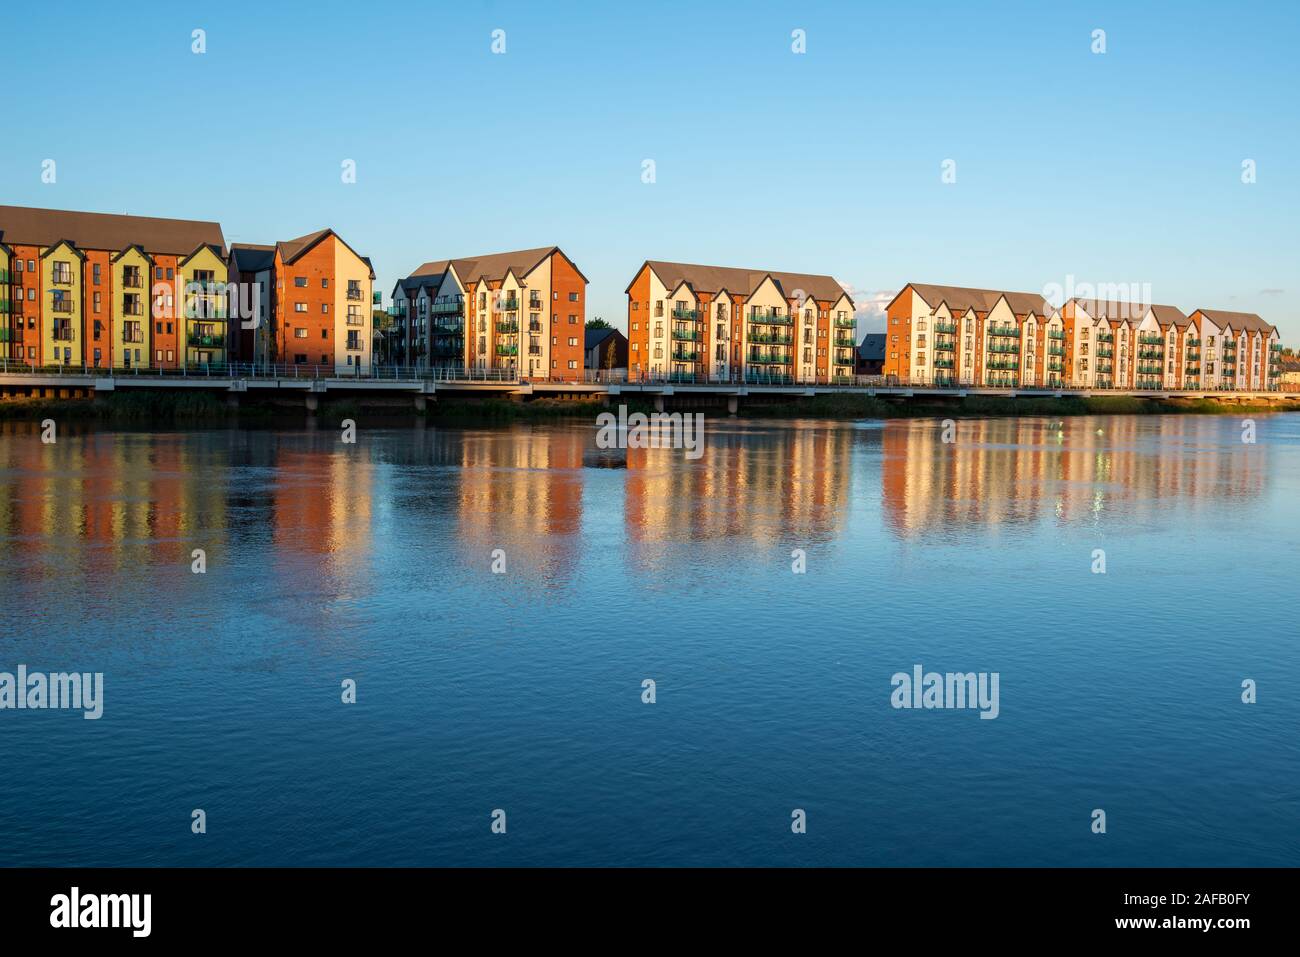 Newport ist eine Hafenstadt in Galles am Fluss Usk, liegt in der Grafschaft Gwent Foto Stock